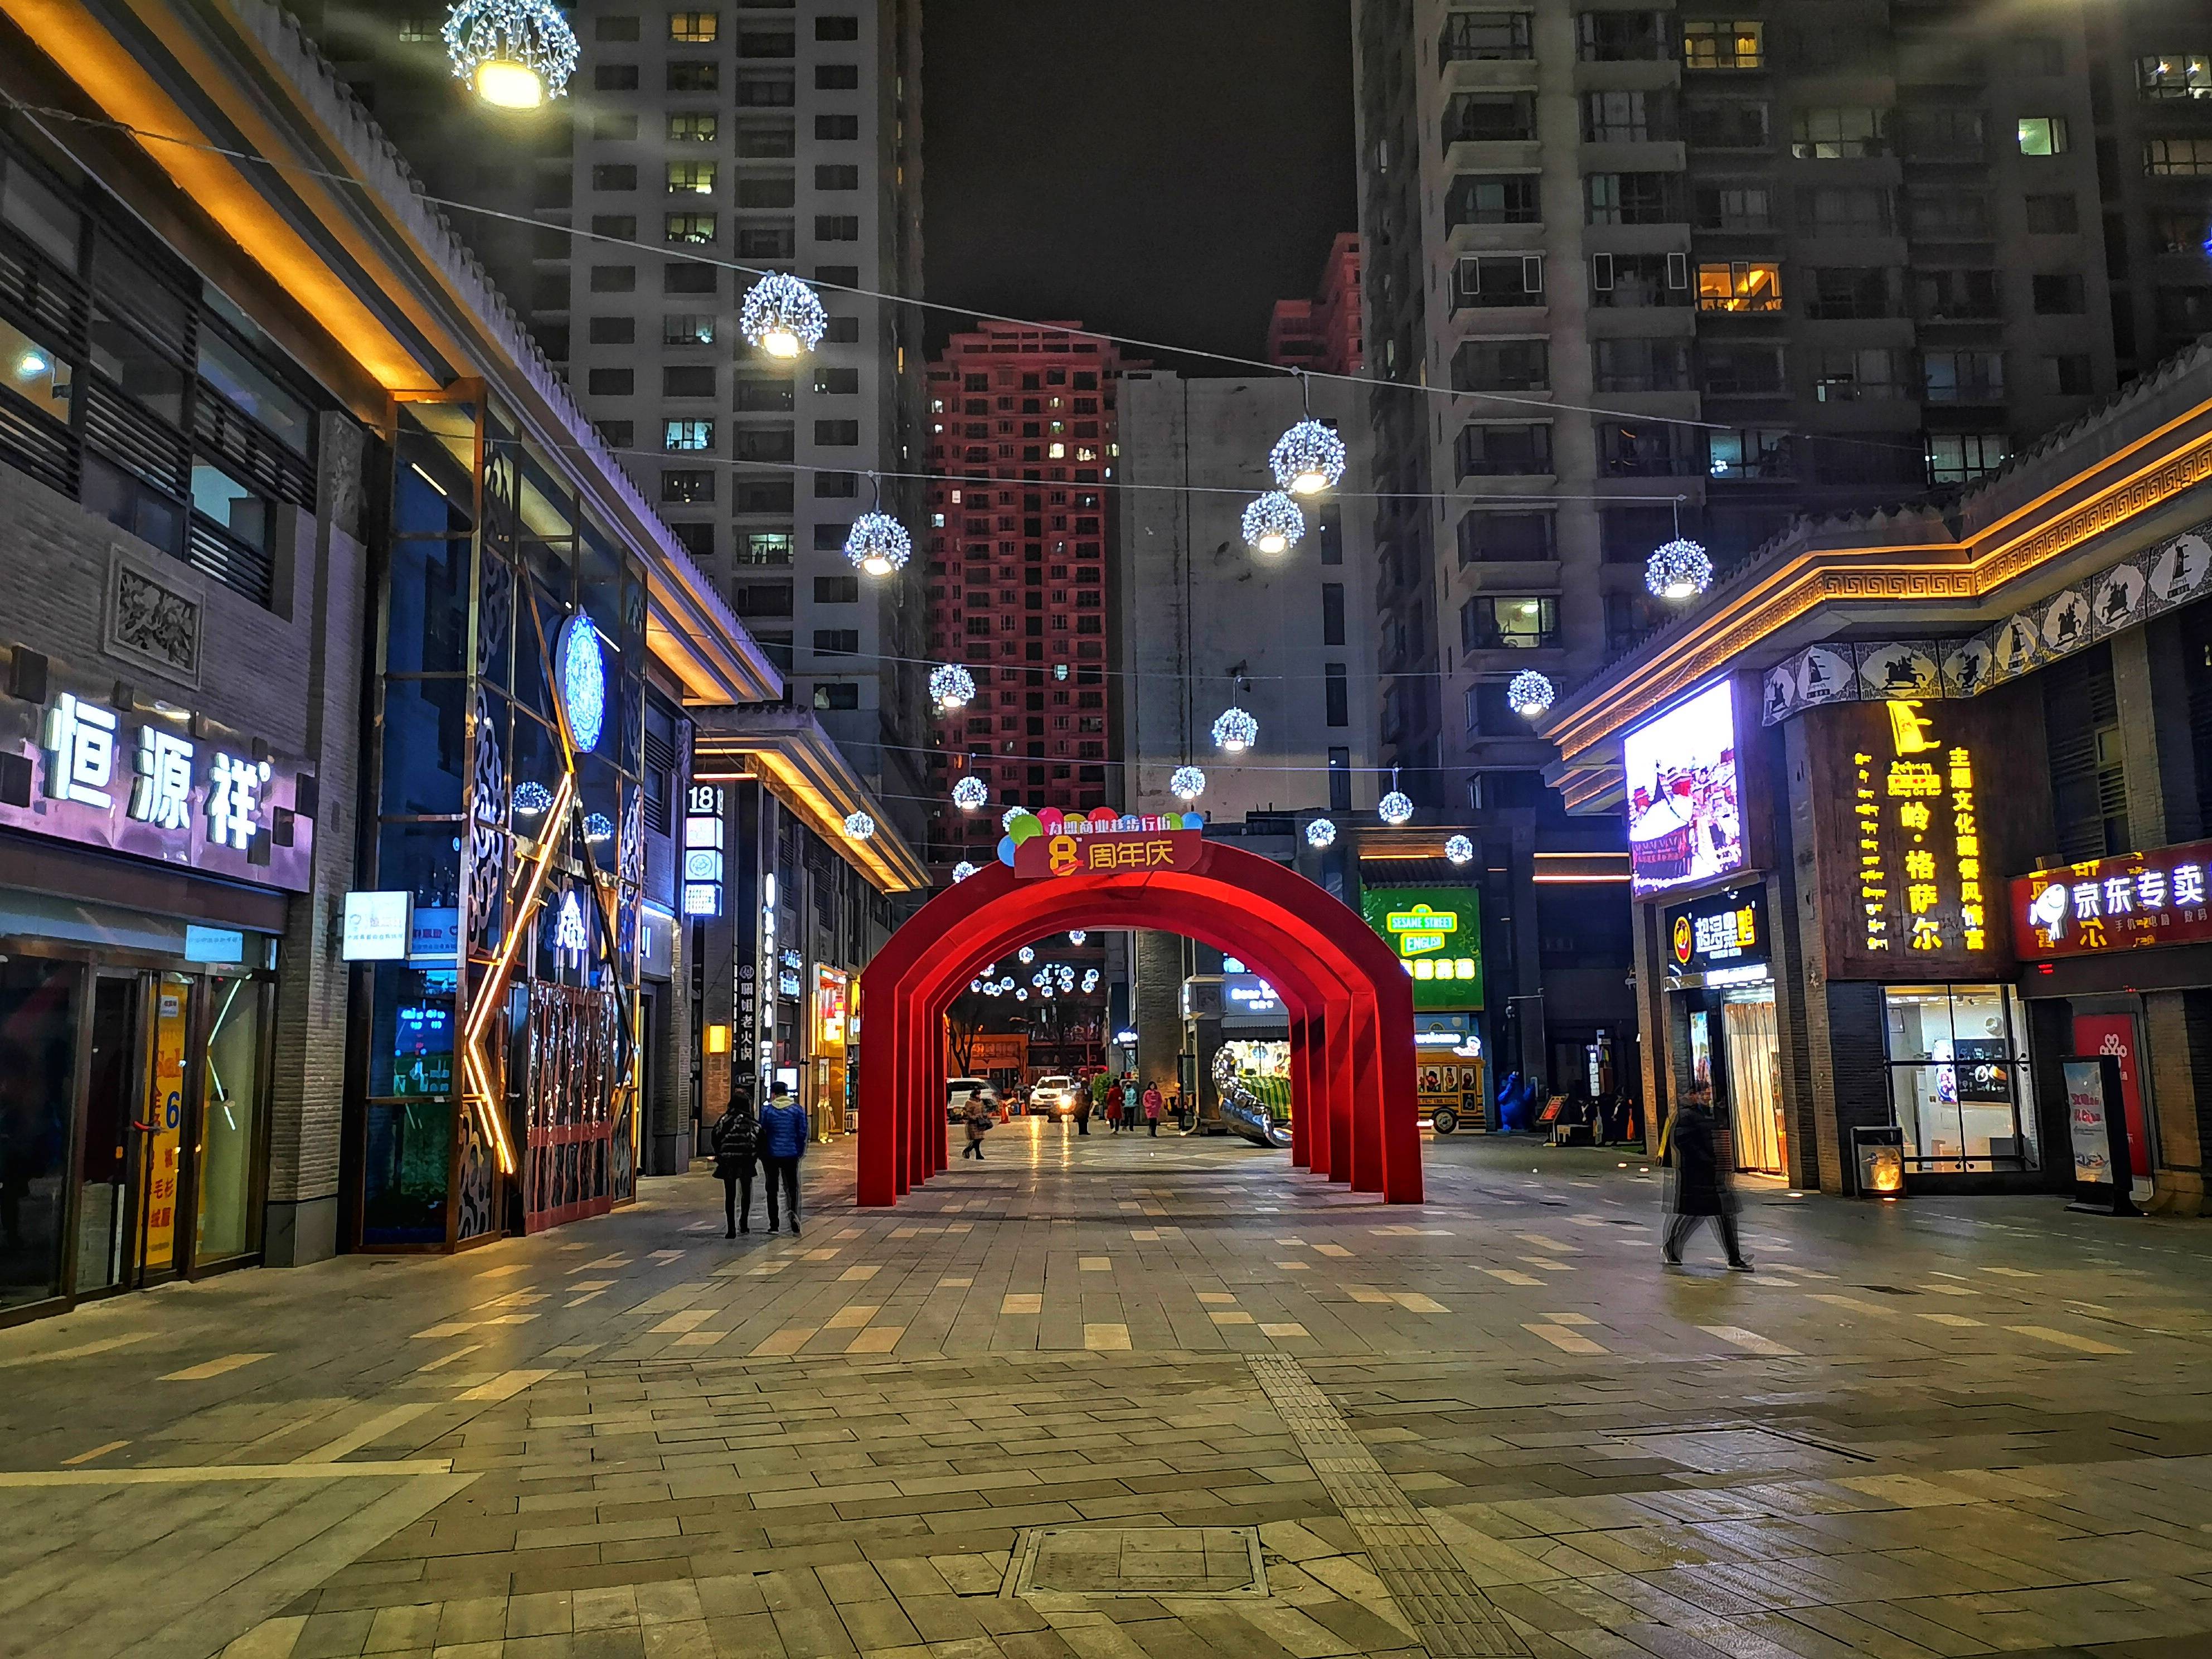 它是西宁市最漂亮的步行街,夜晚灯光璀璨,就是冬天游客少了点